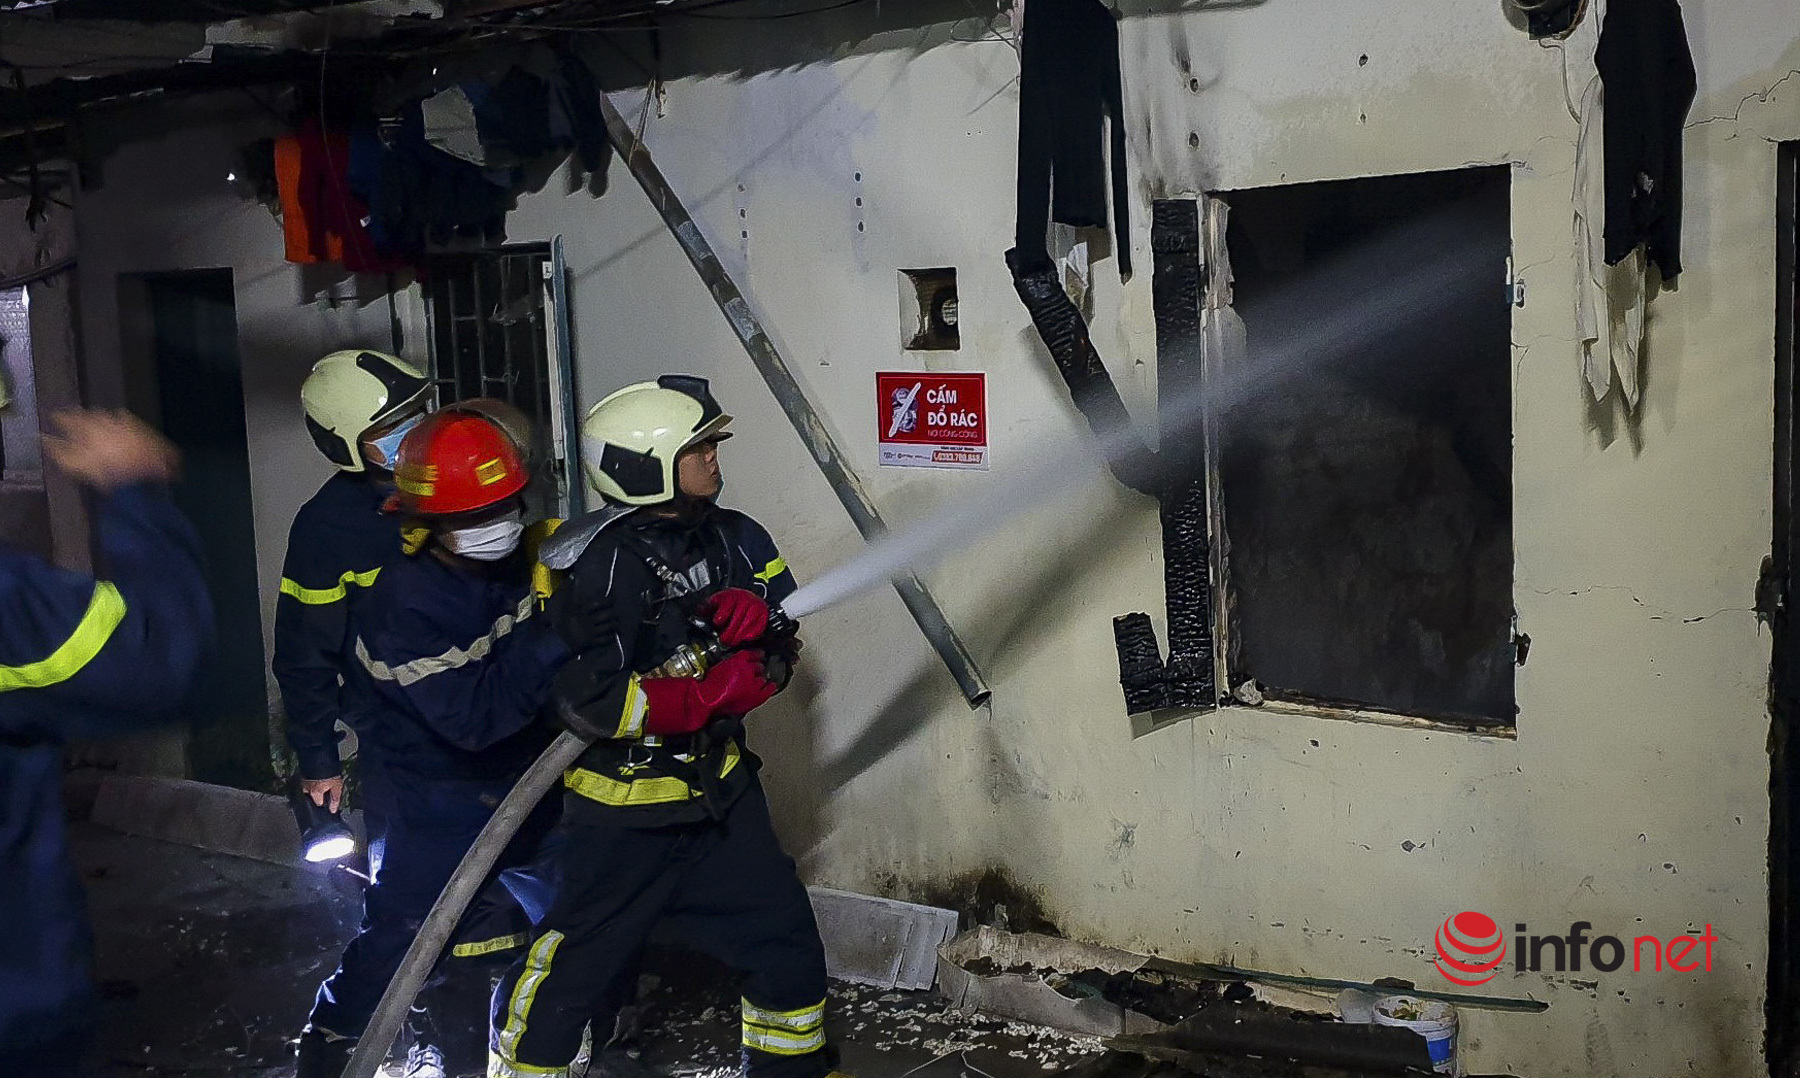 Hà Nội: Cháy lớn, phát ra tiếng nổ to tại khu trọ giữa đêm